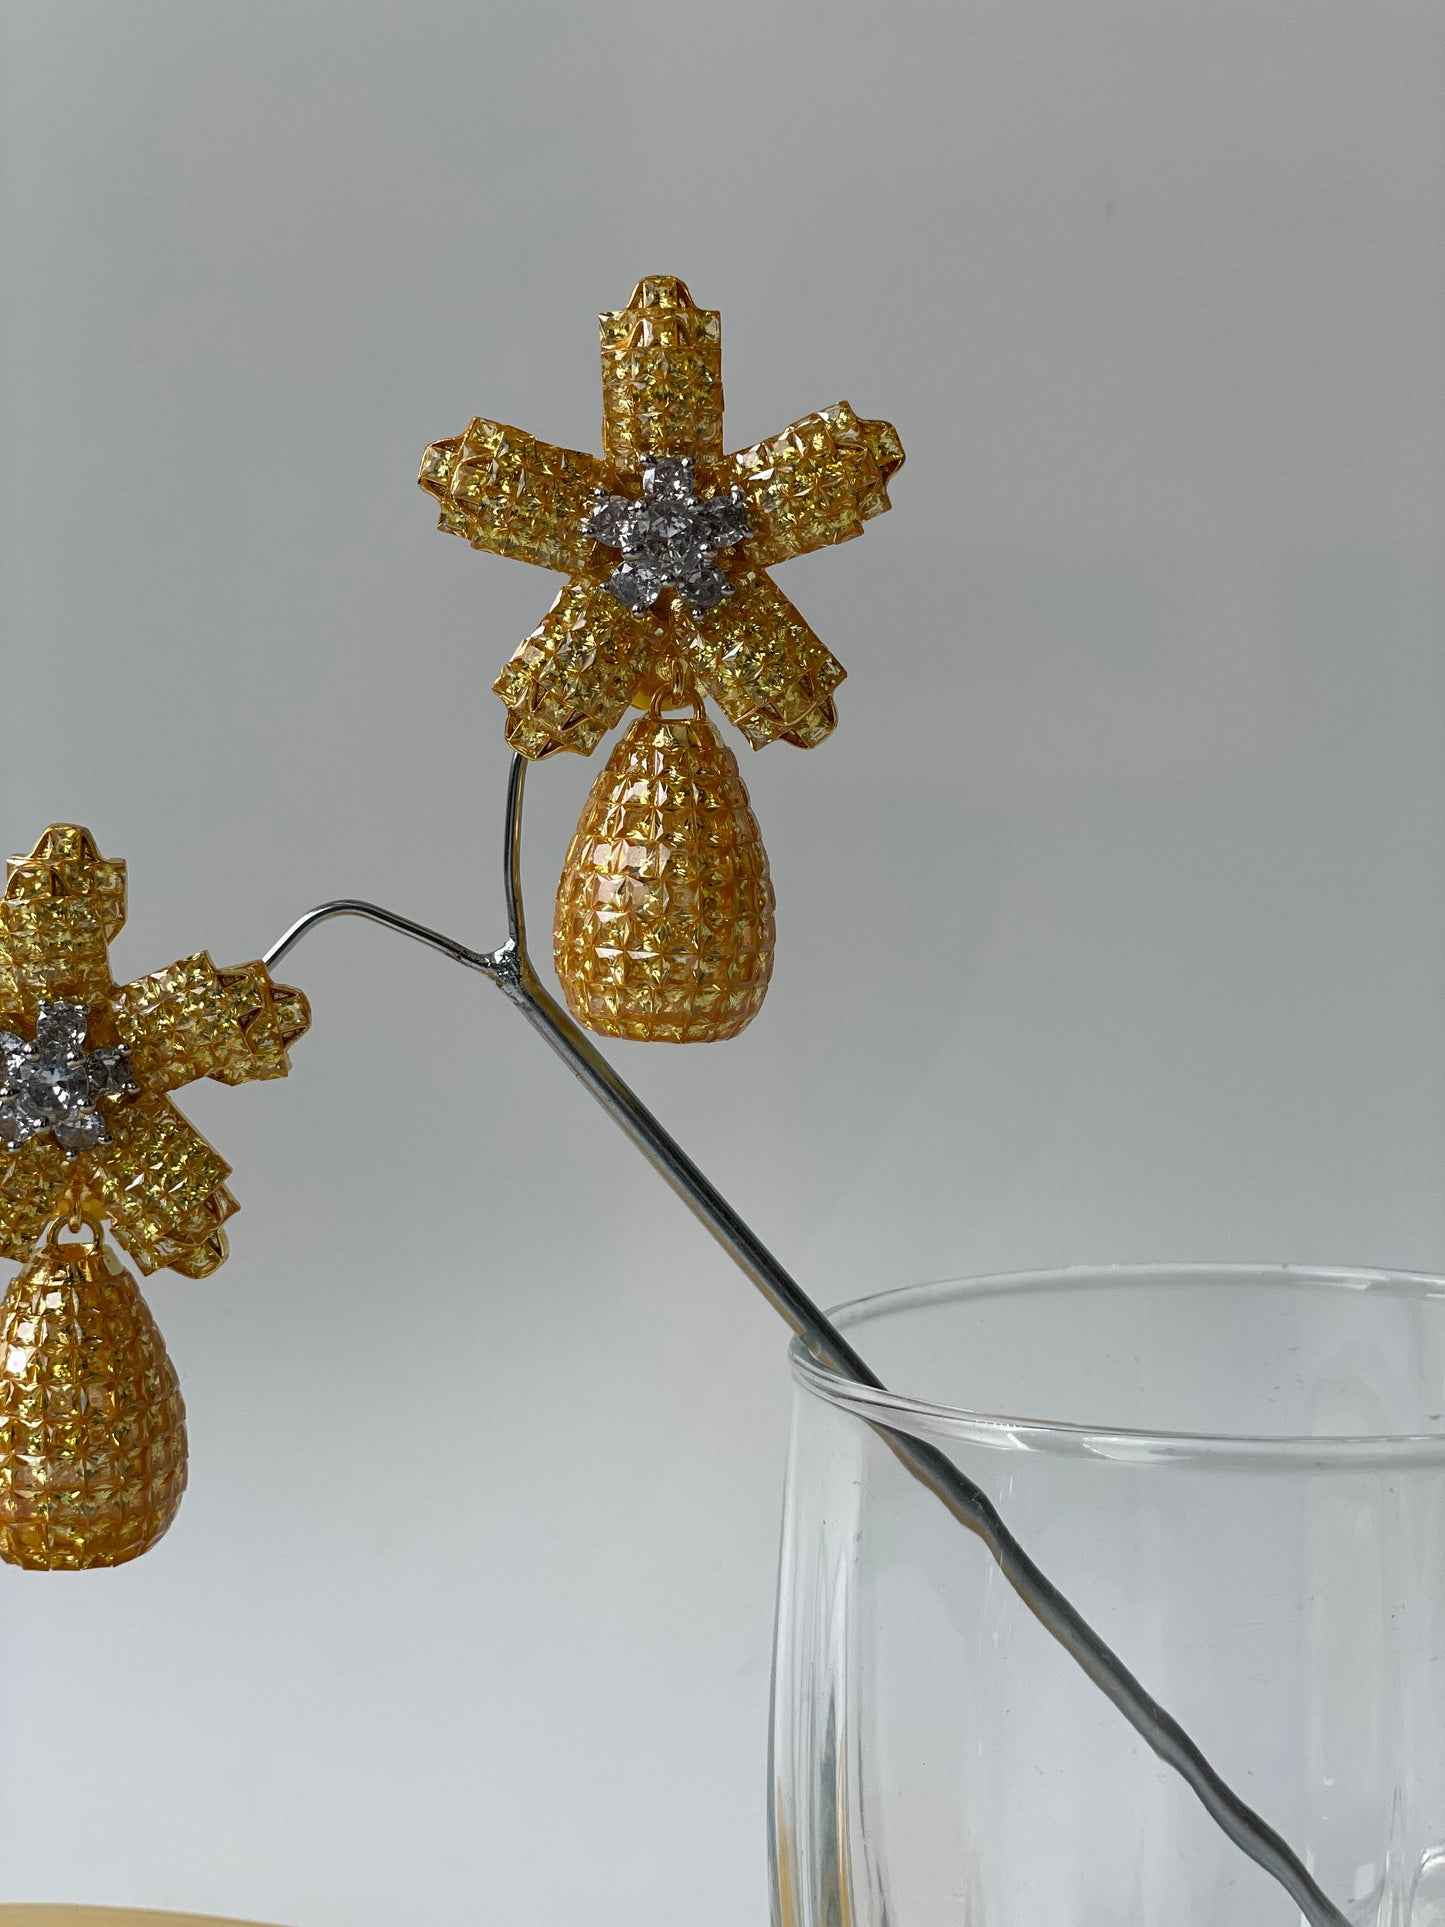 Unique Cut Zircon Floral Earrings